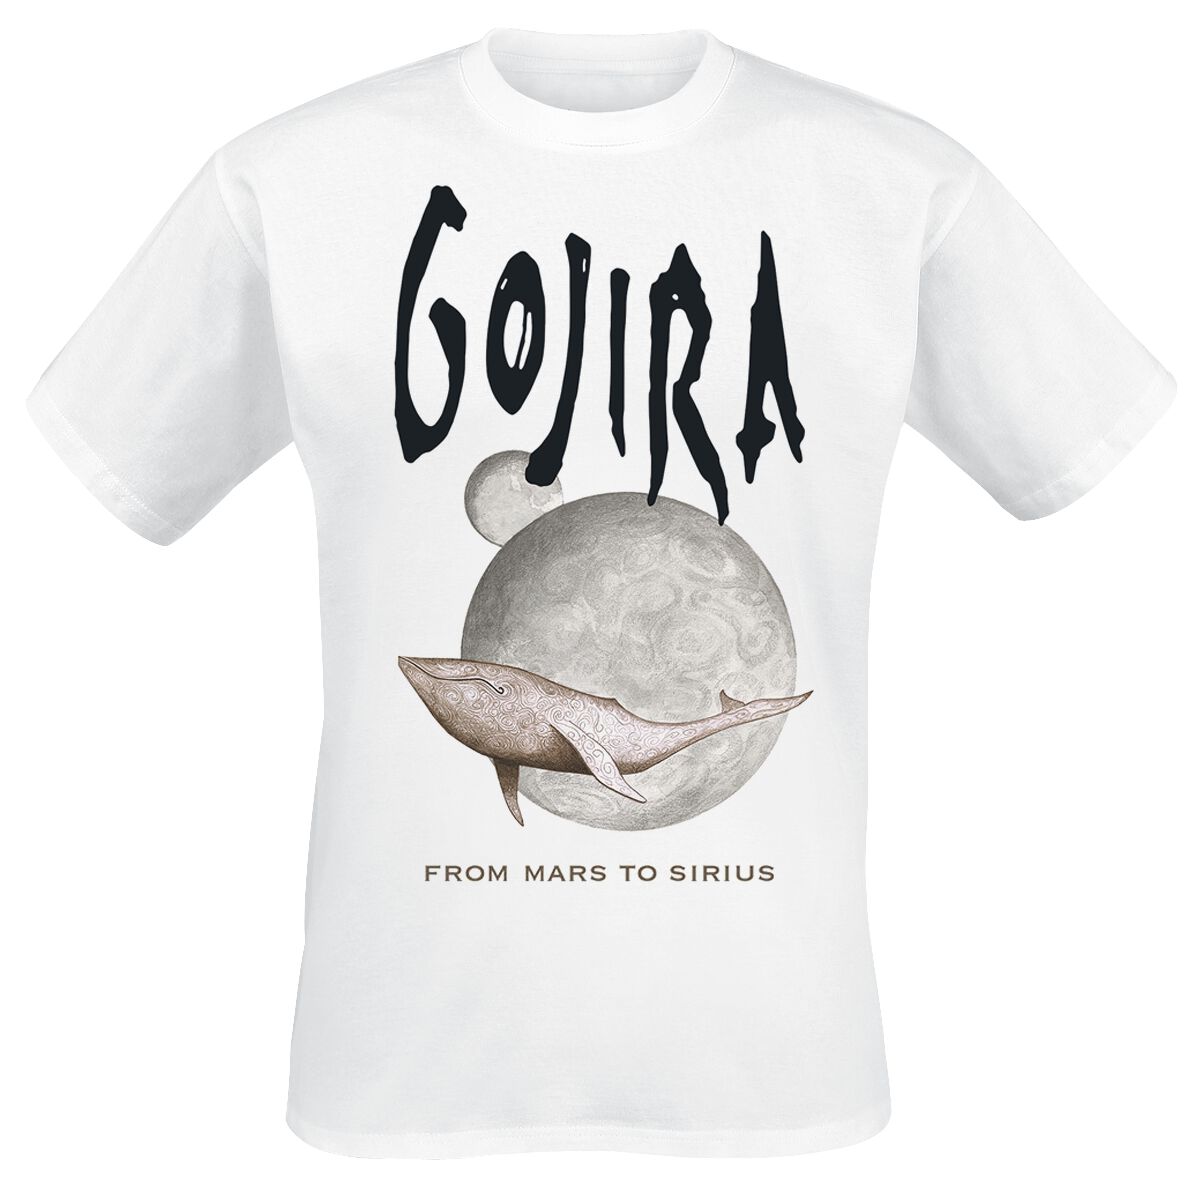 Gojira T-Shirt - Whale From Mars - S bis L - für Männer - Größe M - weiß  - Lizenziertes Merchandise!